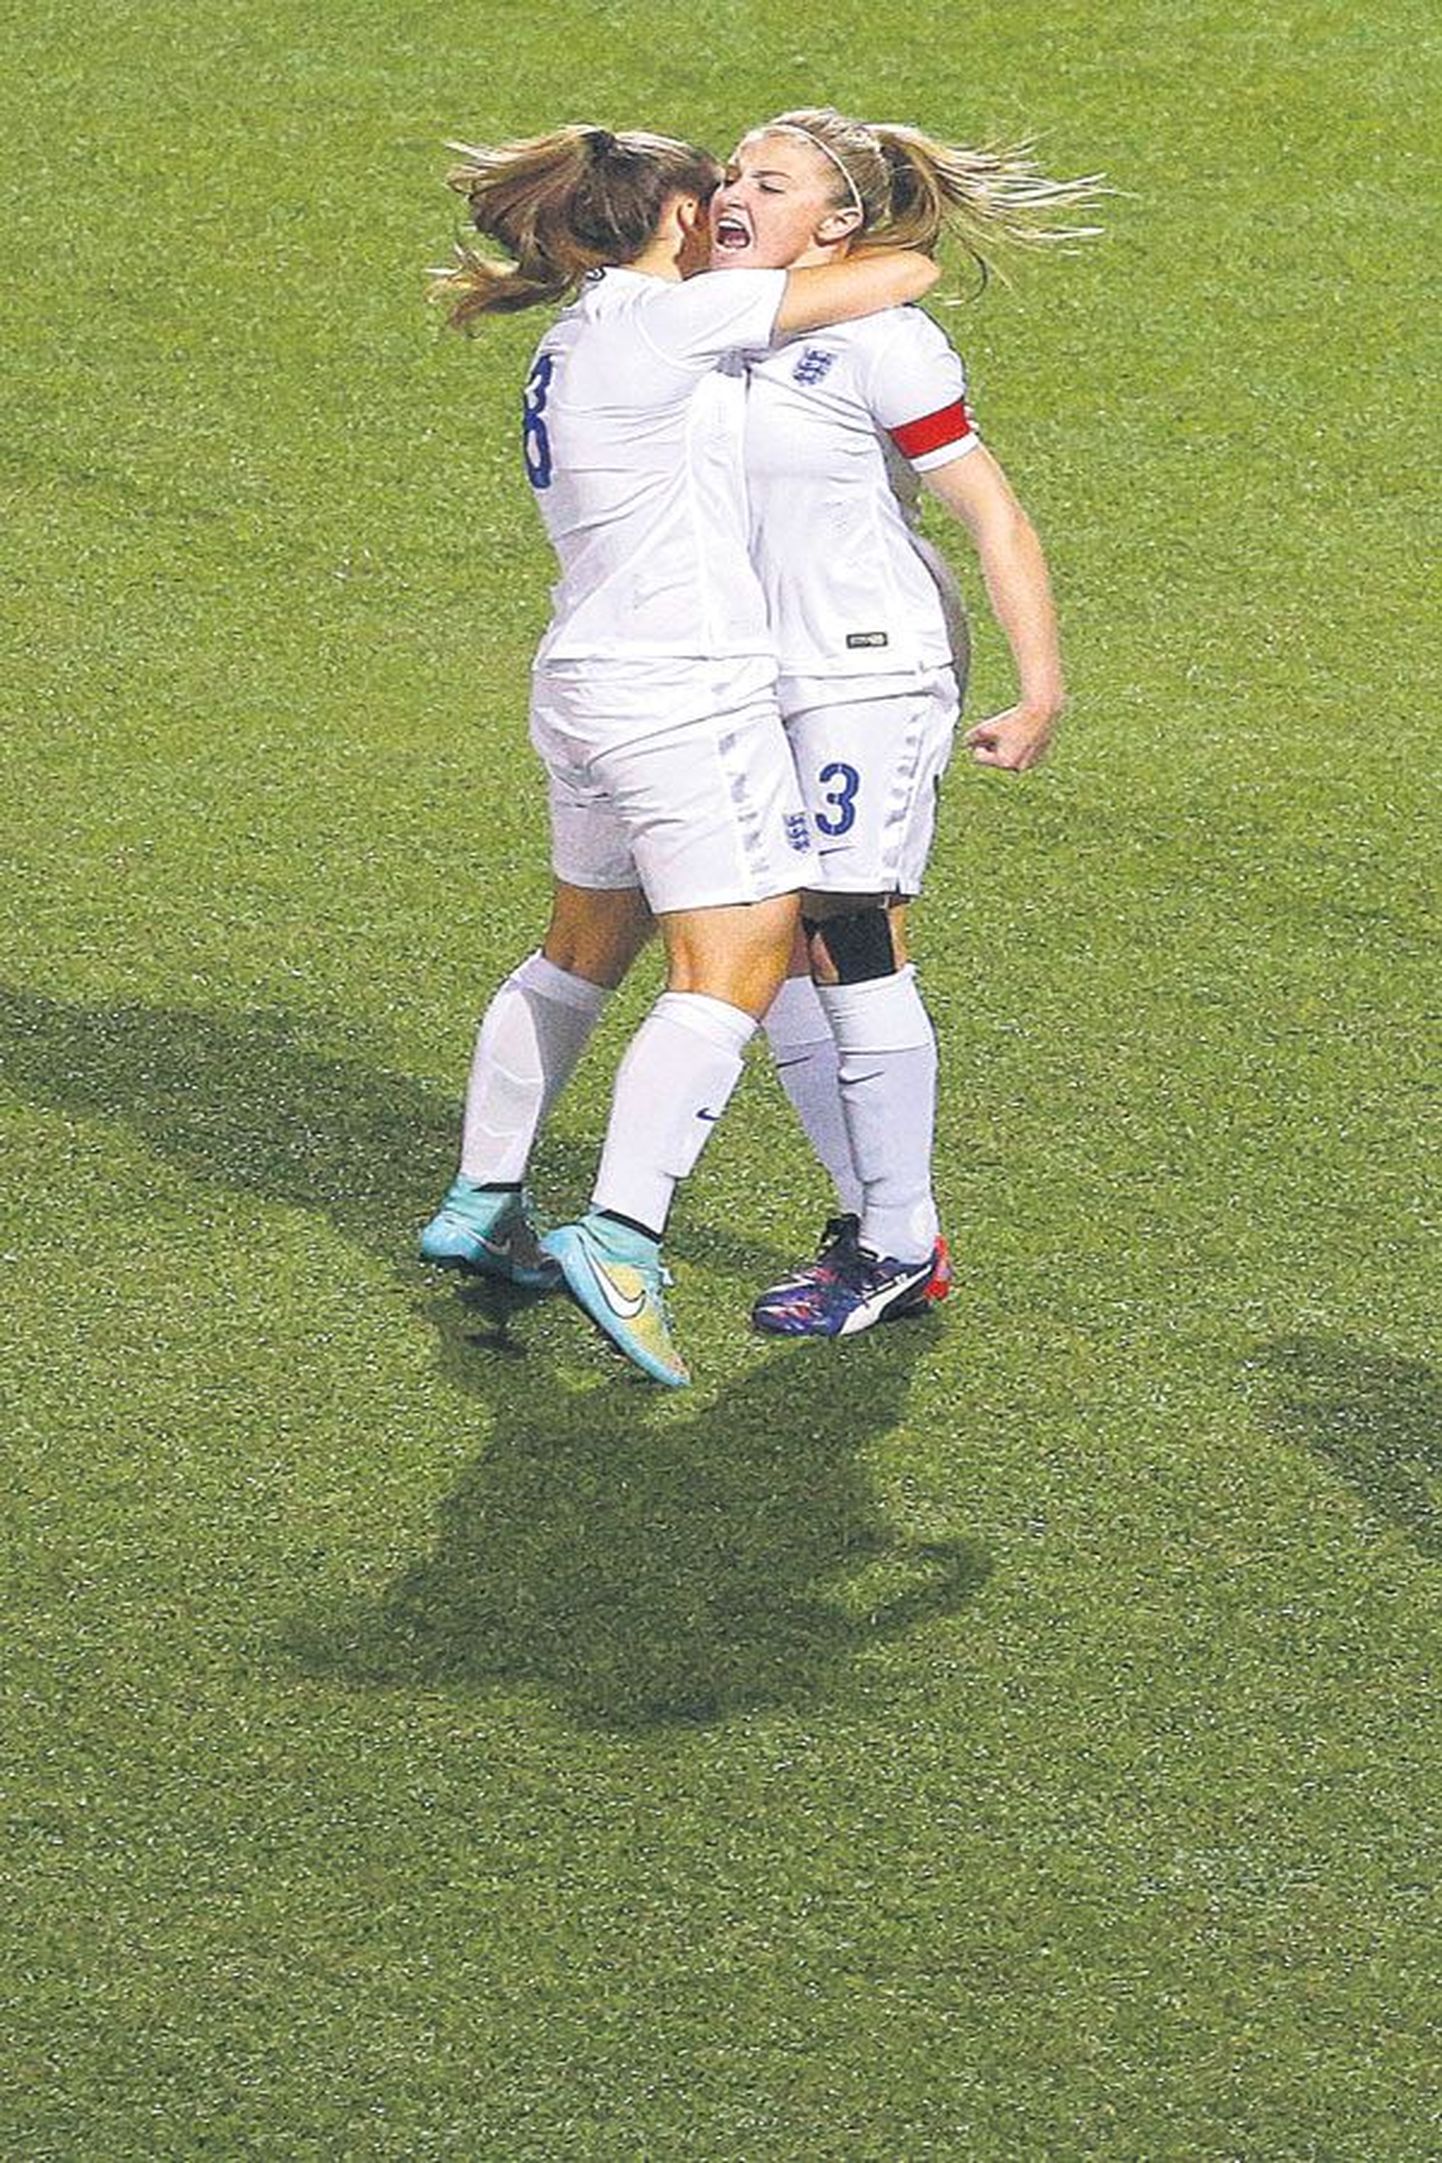 Лиа Уильямсон (справа) вместе со своей подругой по команде радуется пенальти, которое она забила в четверг вечером в ворота сборной Норвегии.